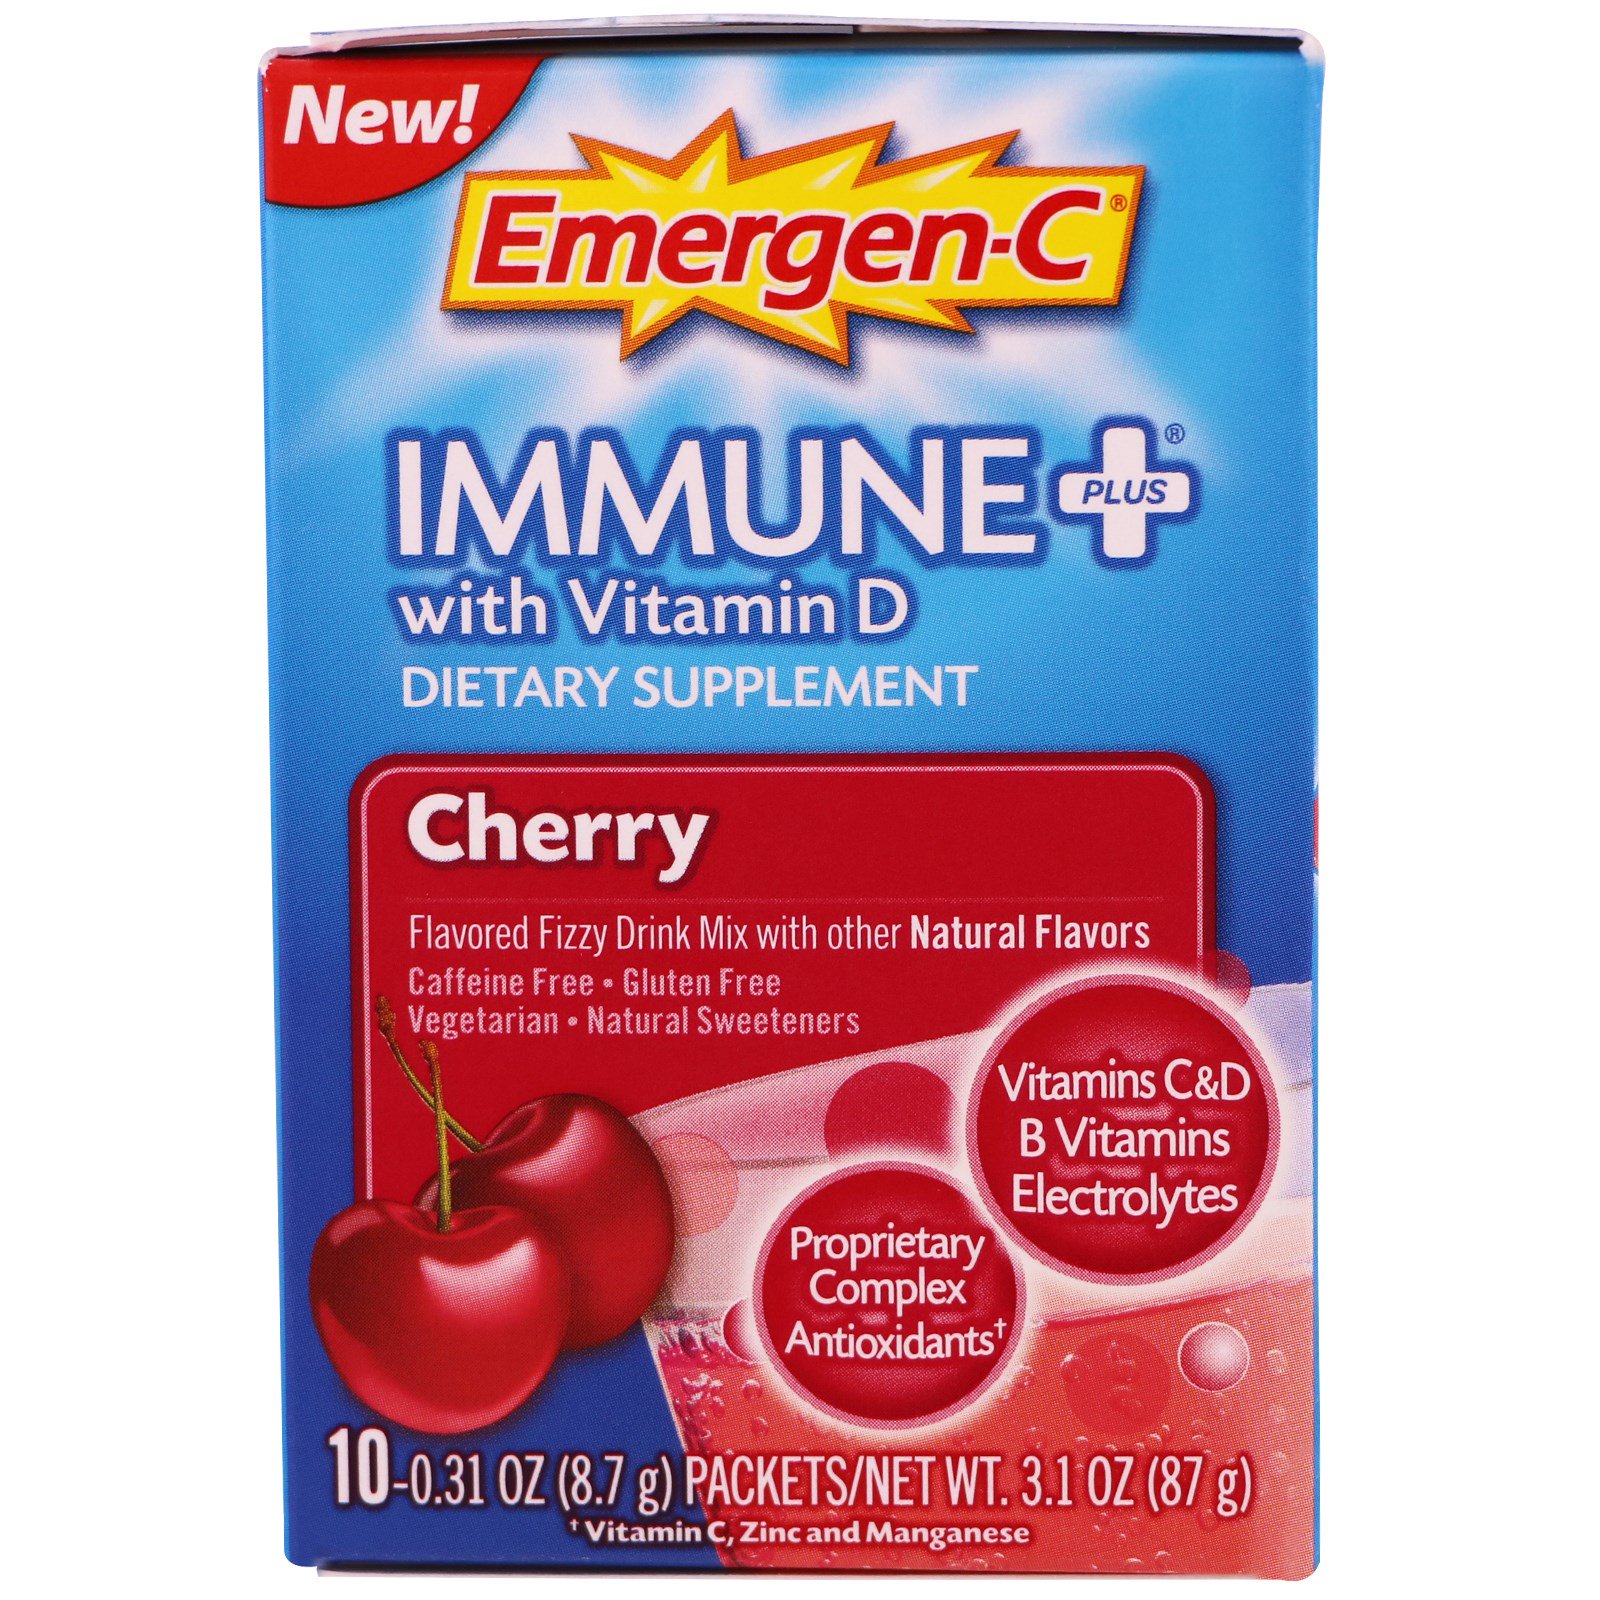 ALACER: Emergen-C Immune Powder Cherry 10 ct